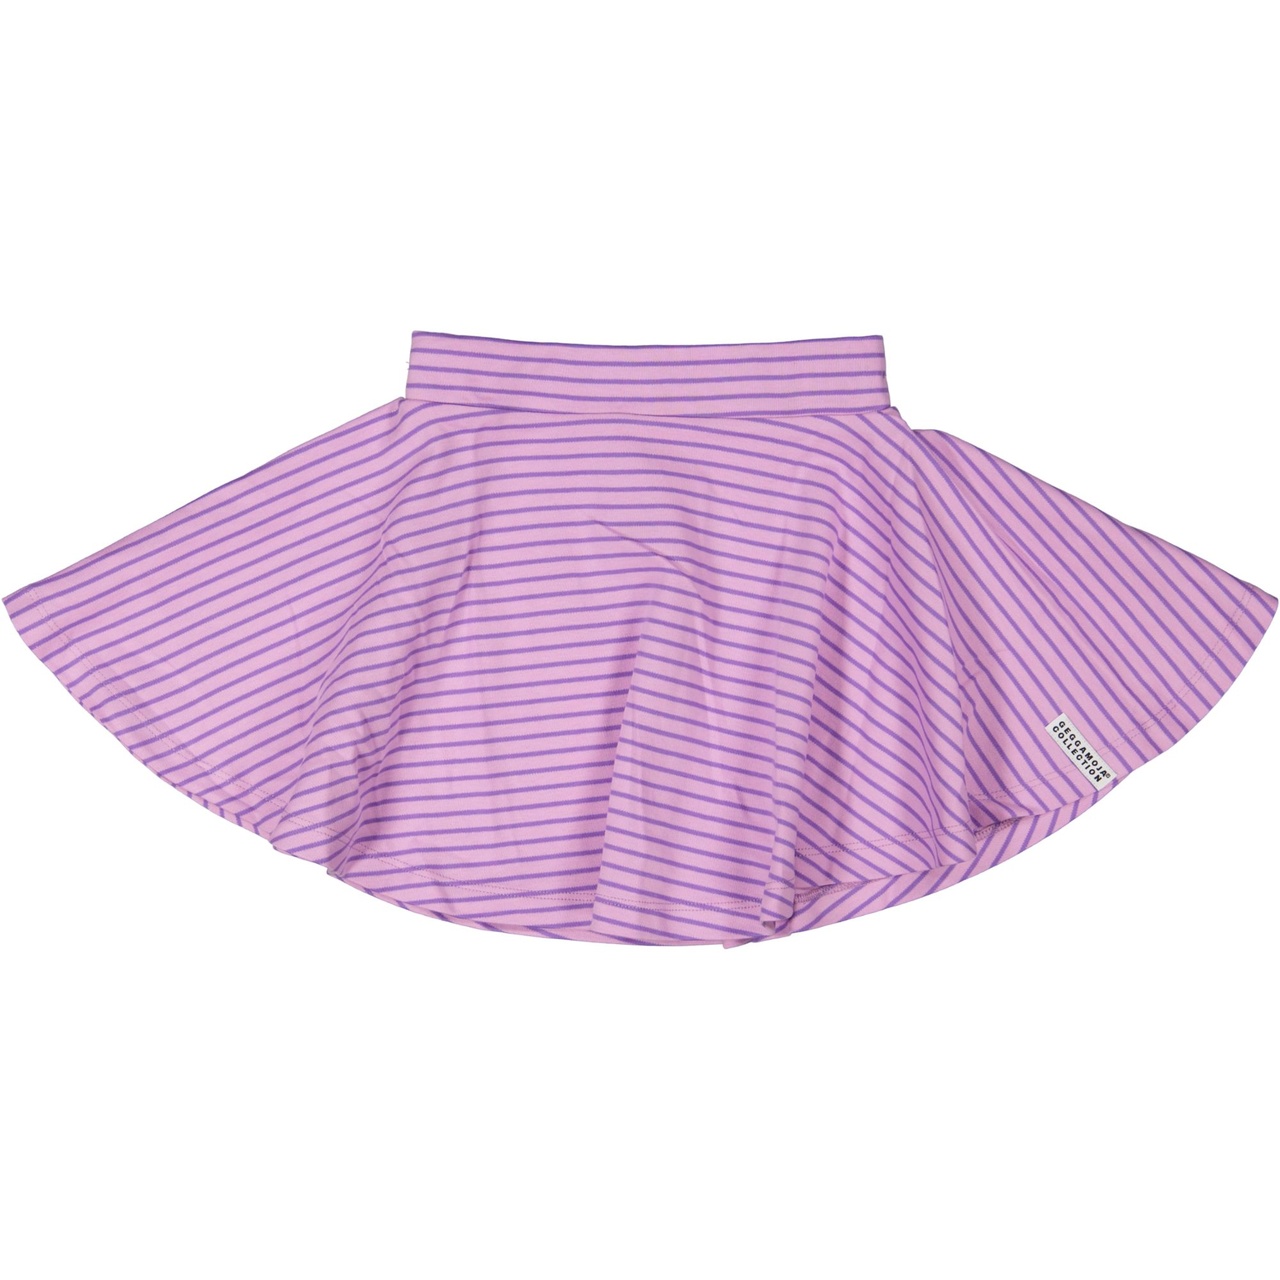 Summer skirt L.purple/purple 146/152